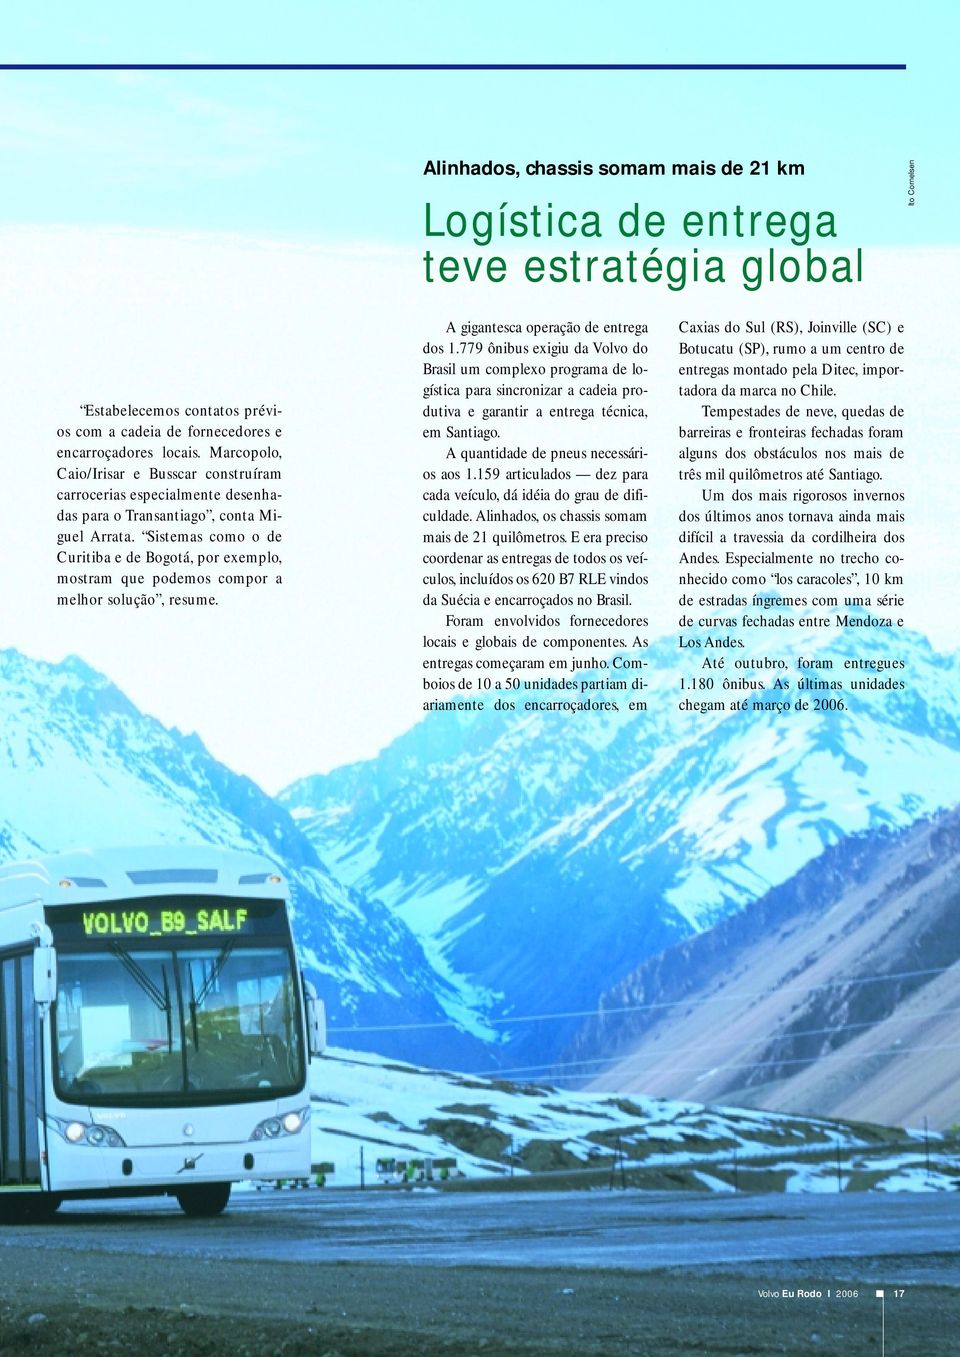 Sistemas como o de Curitiba e de Bogotá, por exemplo, mostram que podemos compor a melhor solução, resume. A gigantesca operação de entrega dos 1.